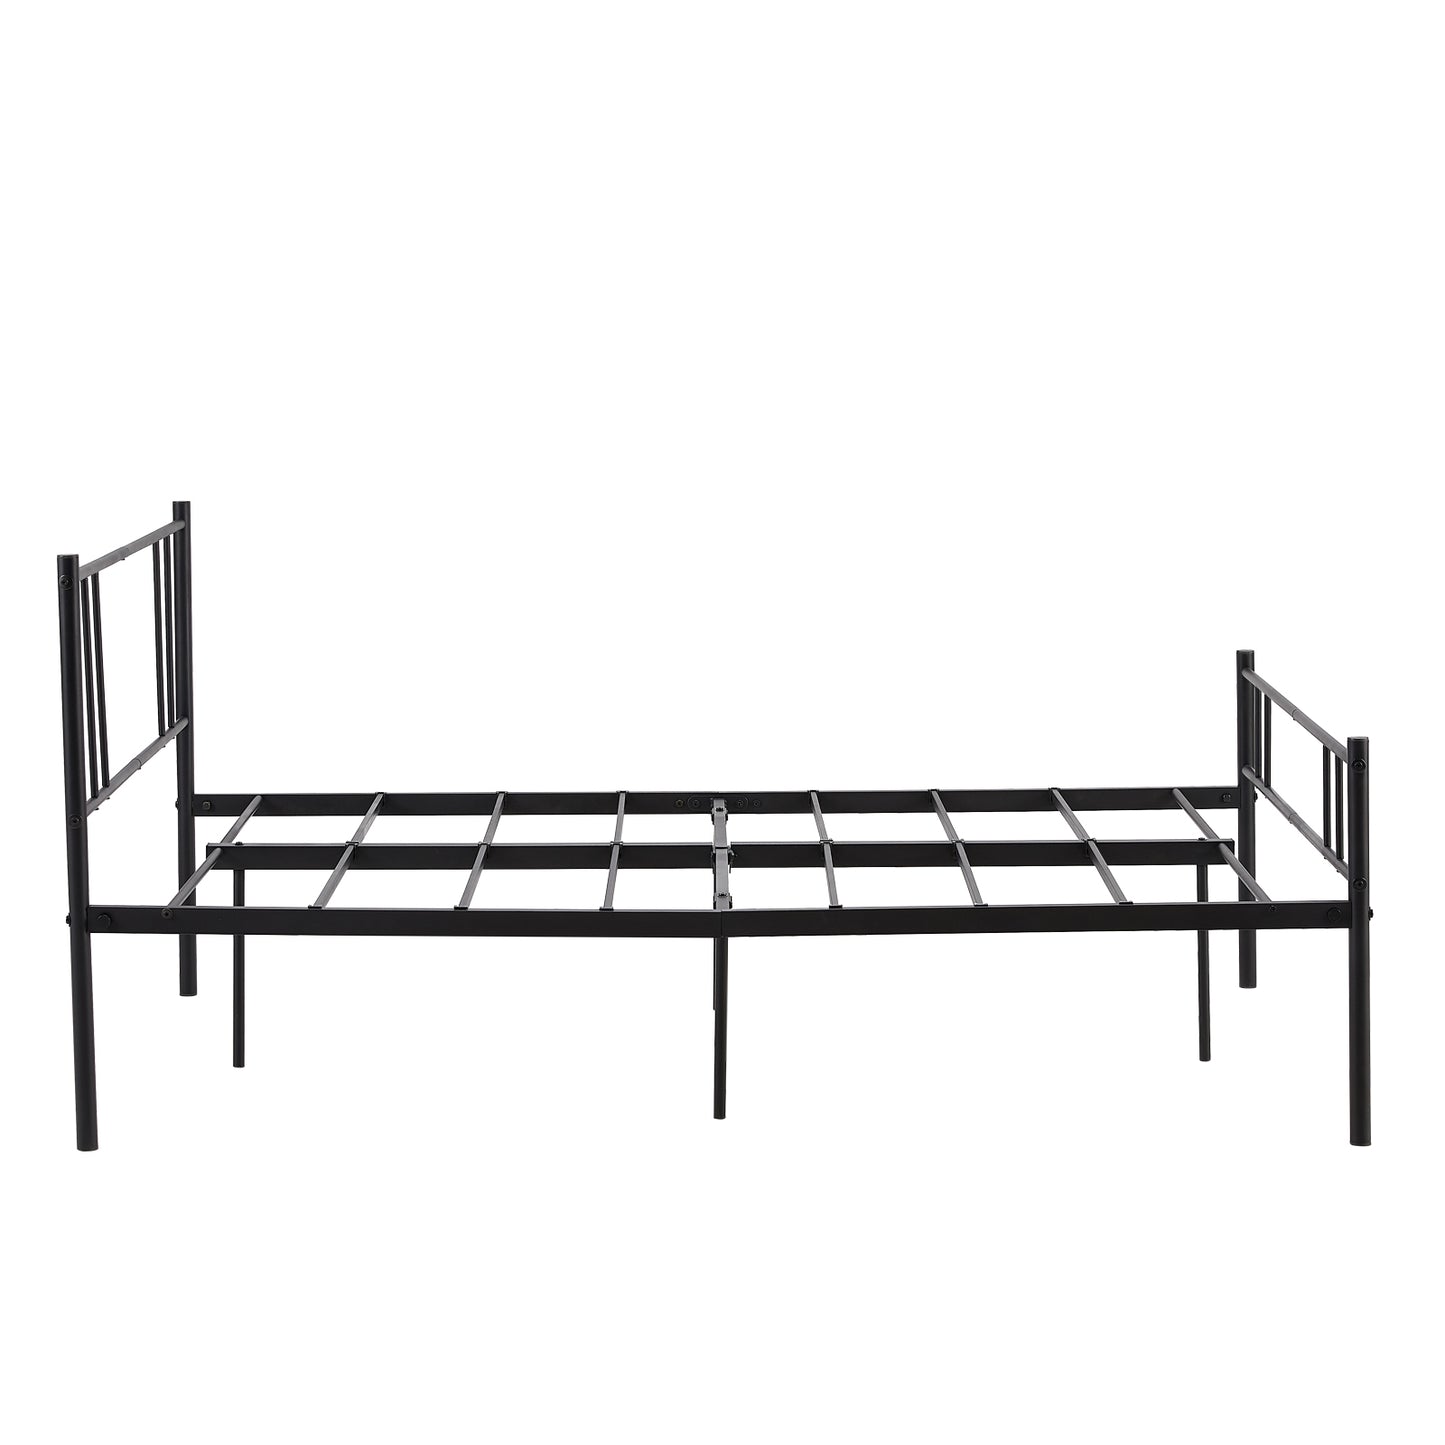 LOCARNO Small Double Metal Bed 123*197cm - Black